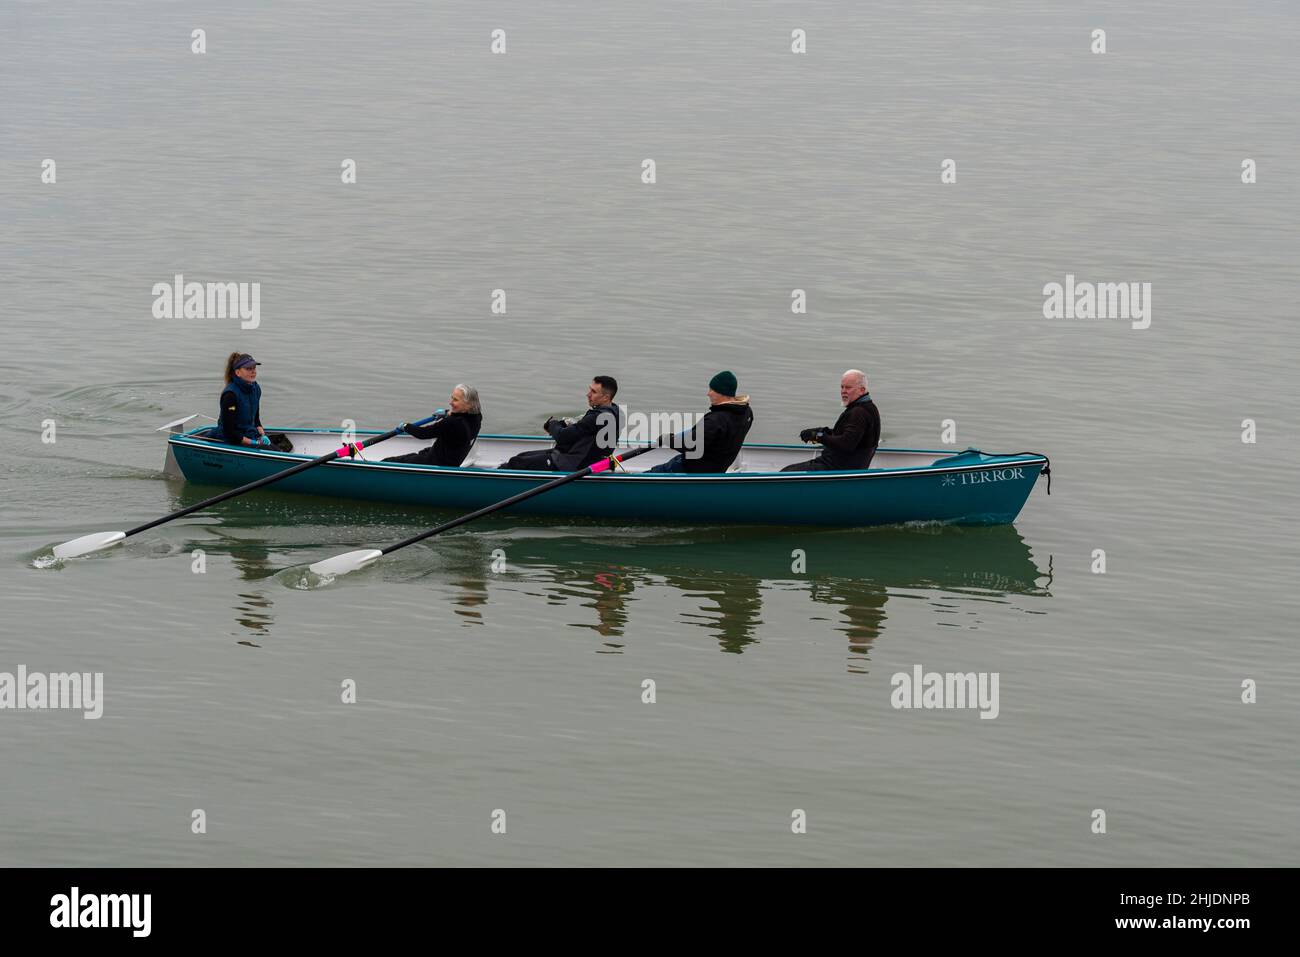 Vier Ruder Rudern Rudern Club Celtic Longboat namens Terror, gerudert auf der Themse Mündung vorbei Southend on Sea an einem nebligen, ruhigen Morgen Stockfoto